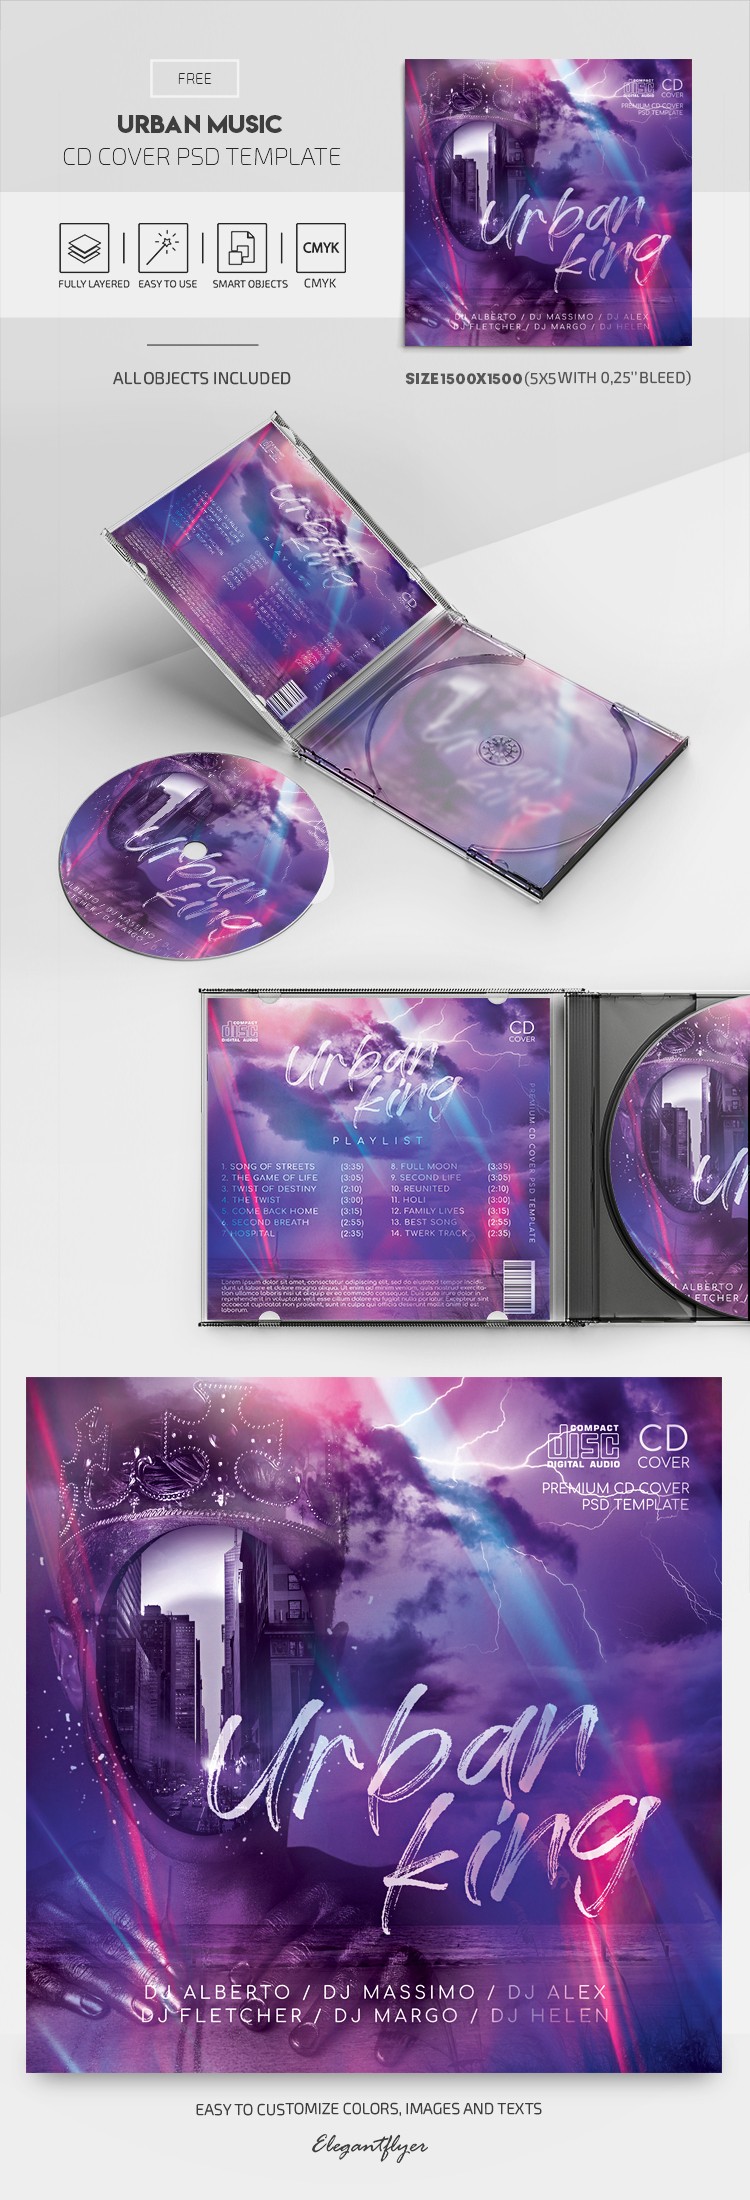 城市音樂CD封面 by ElegantFlyer